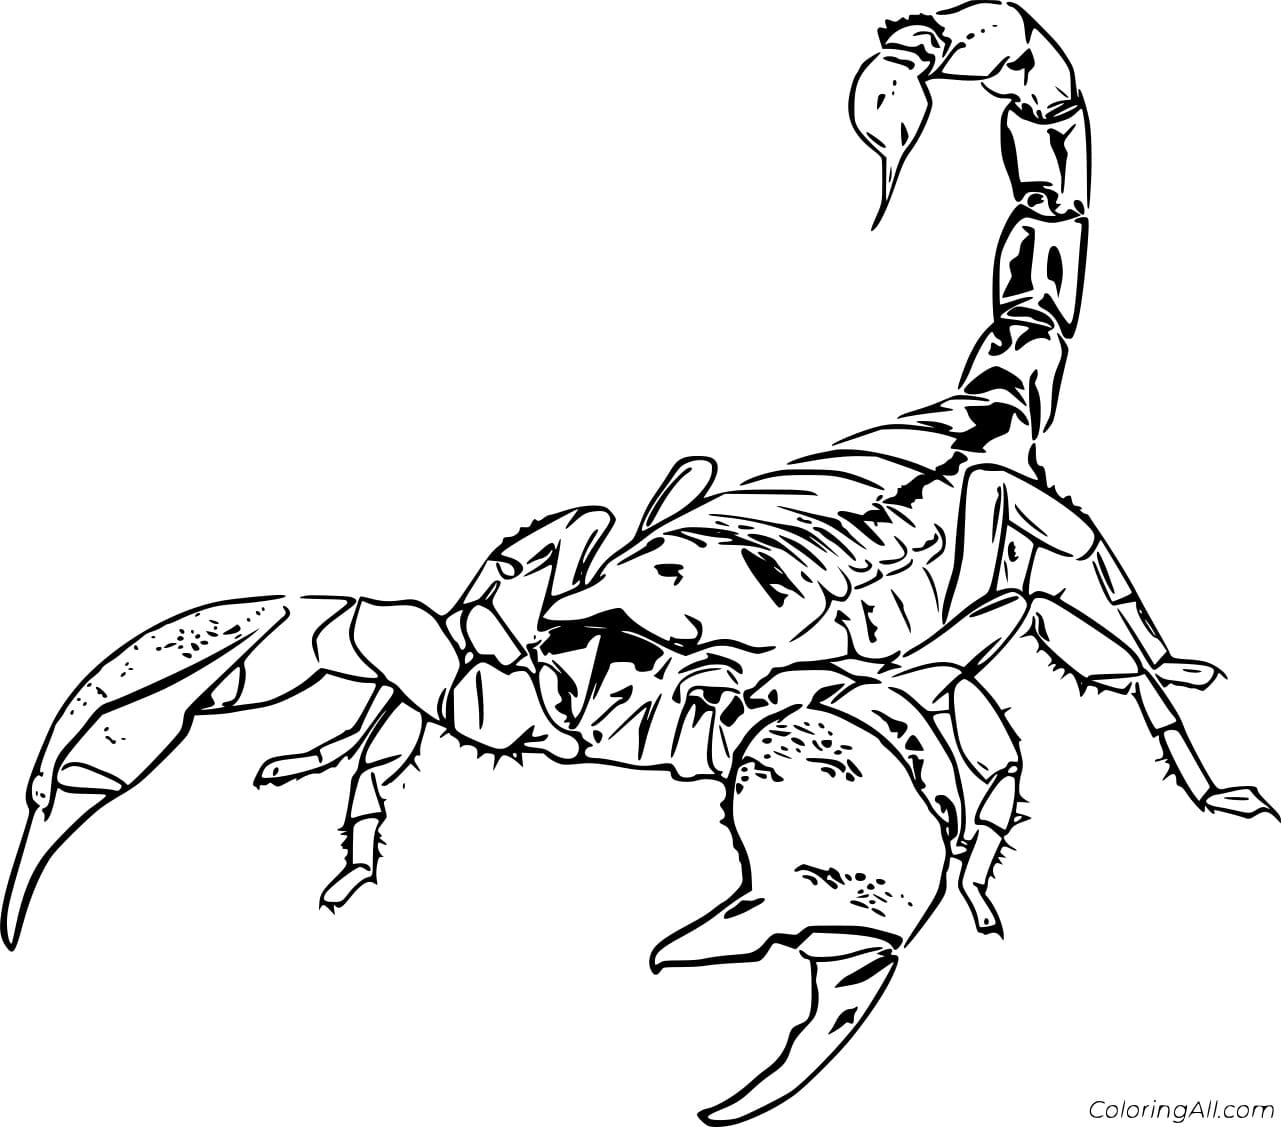 Emperor Scorpion Image Coloring Page